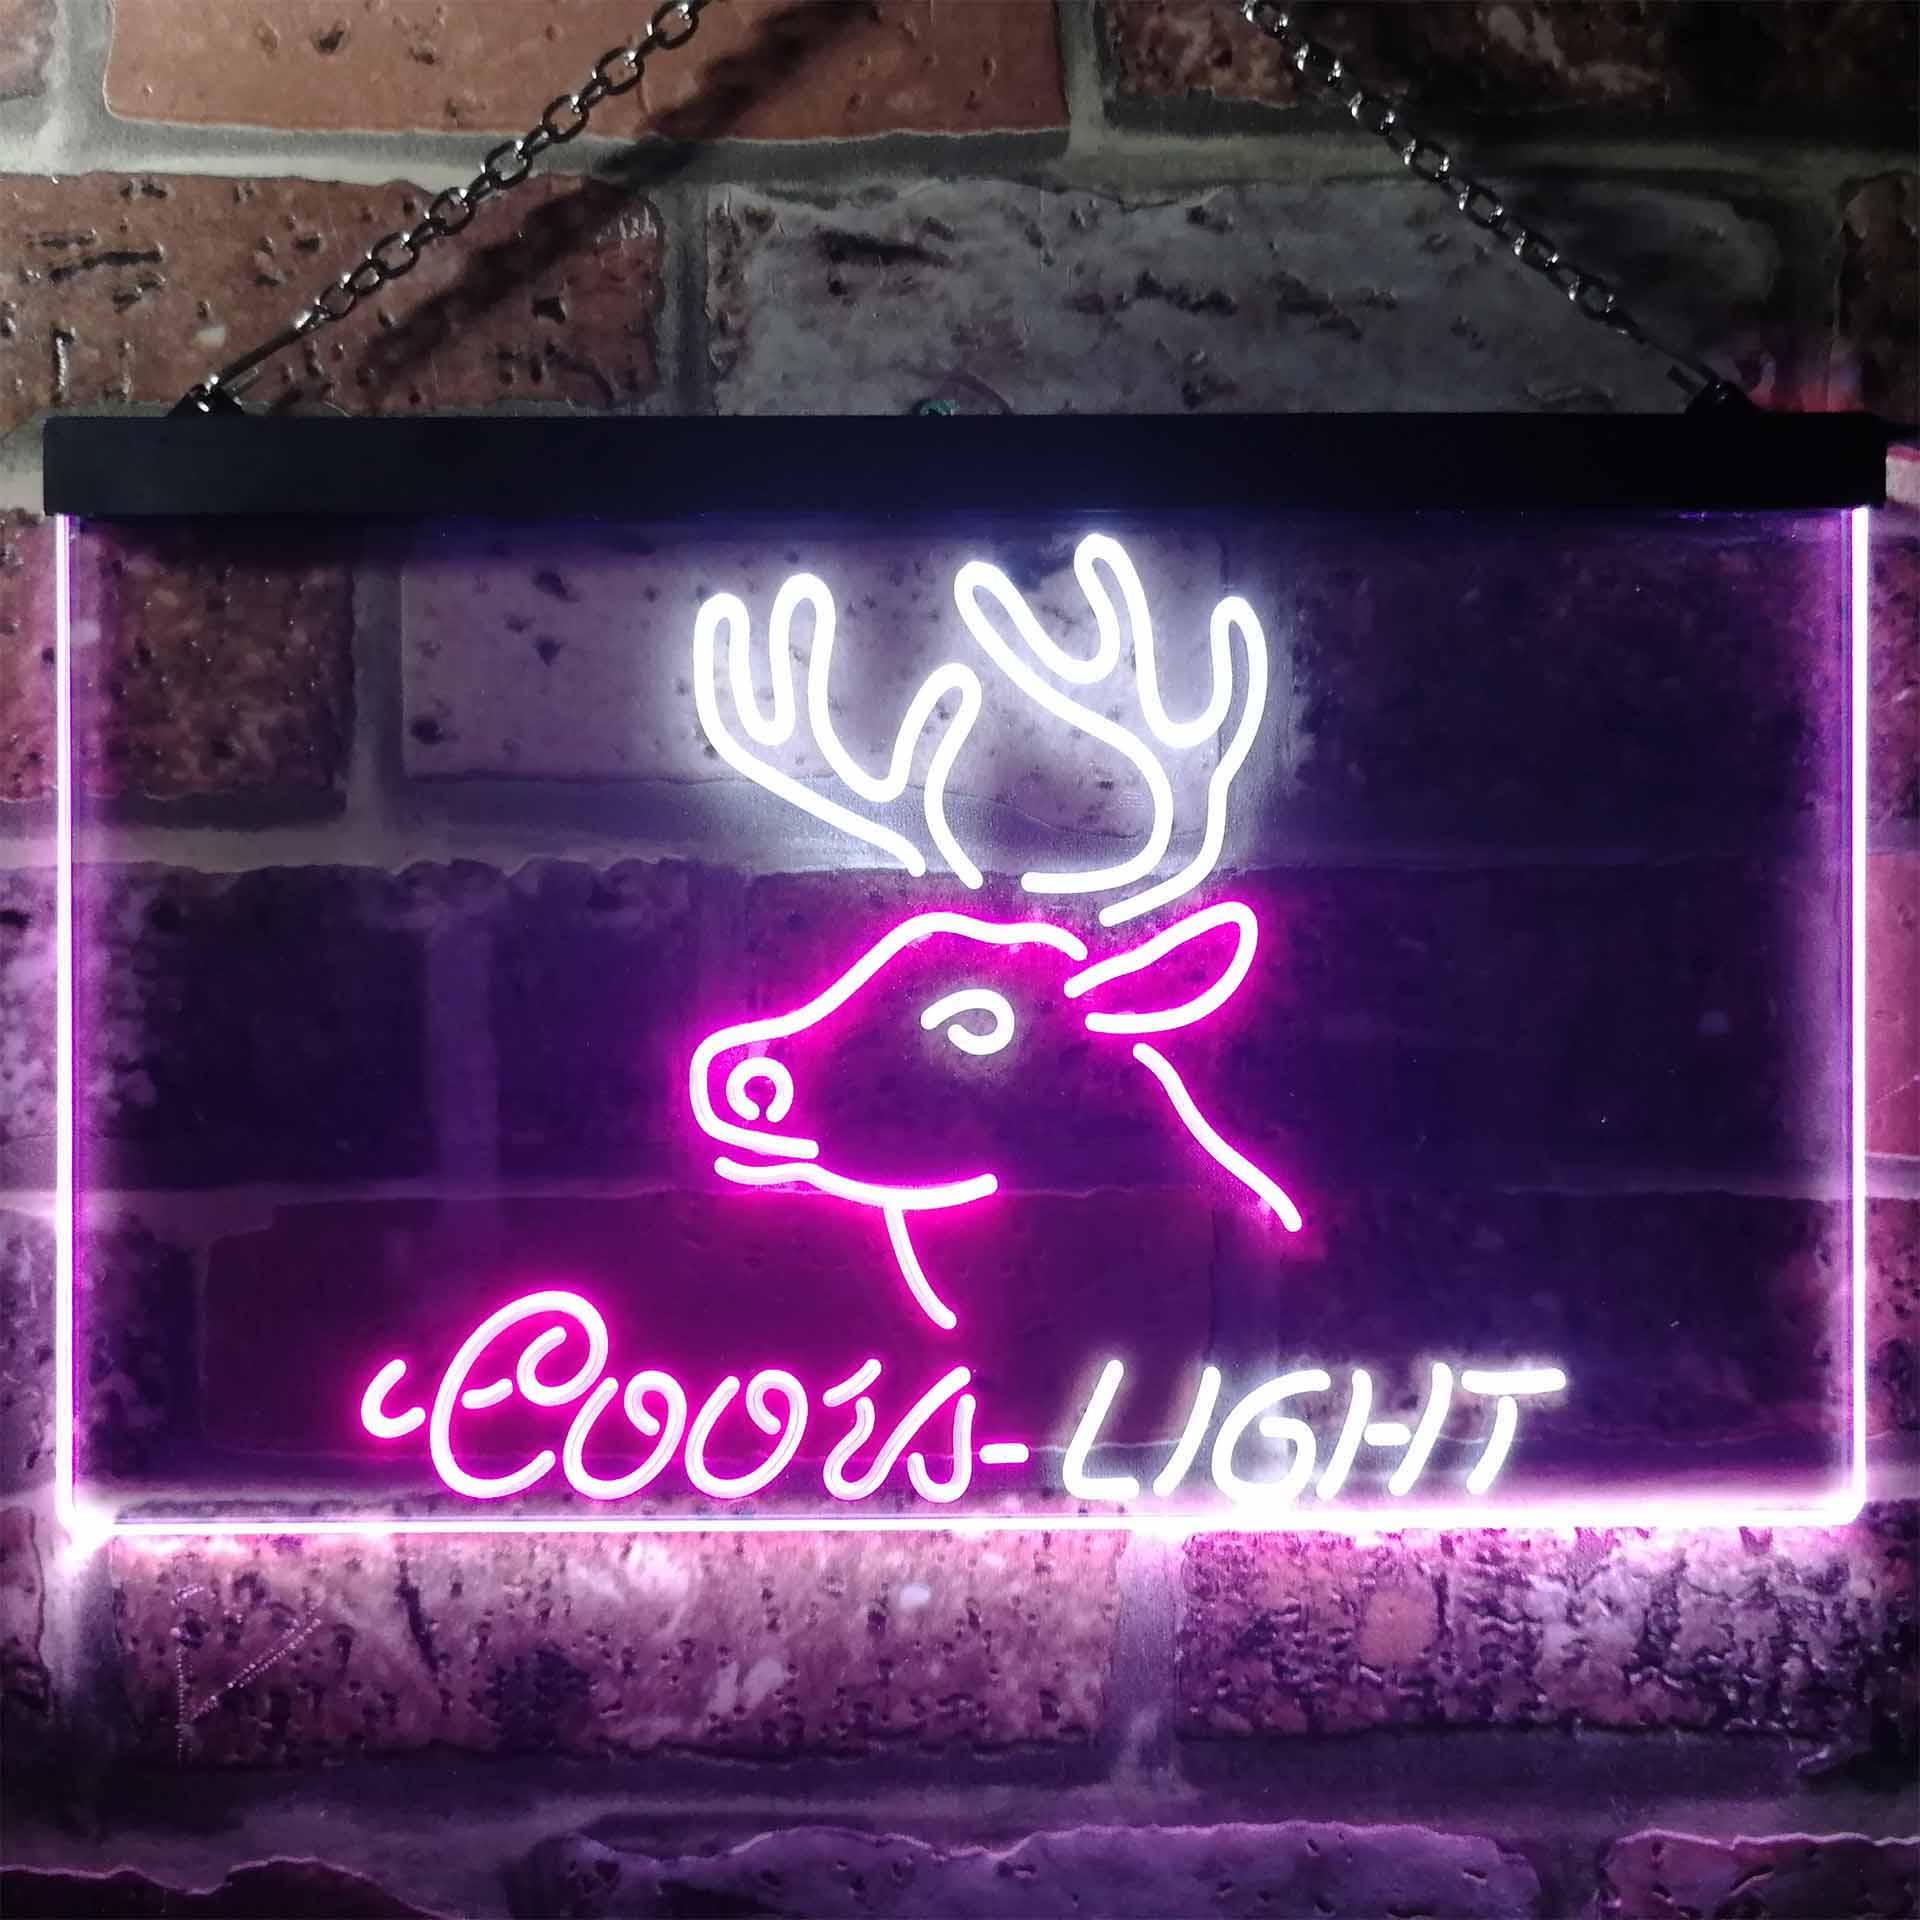 Coors Light Deer Den Man Cave Neon-Like LED Sign